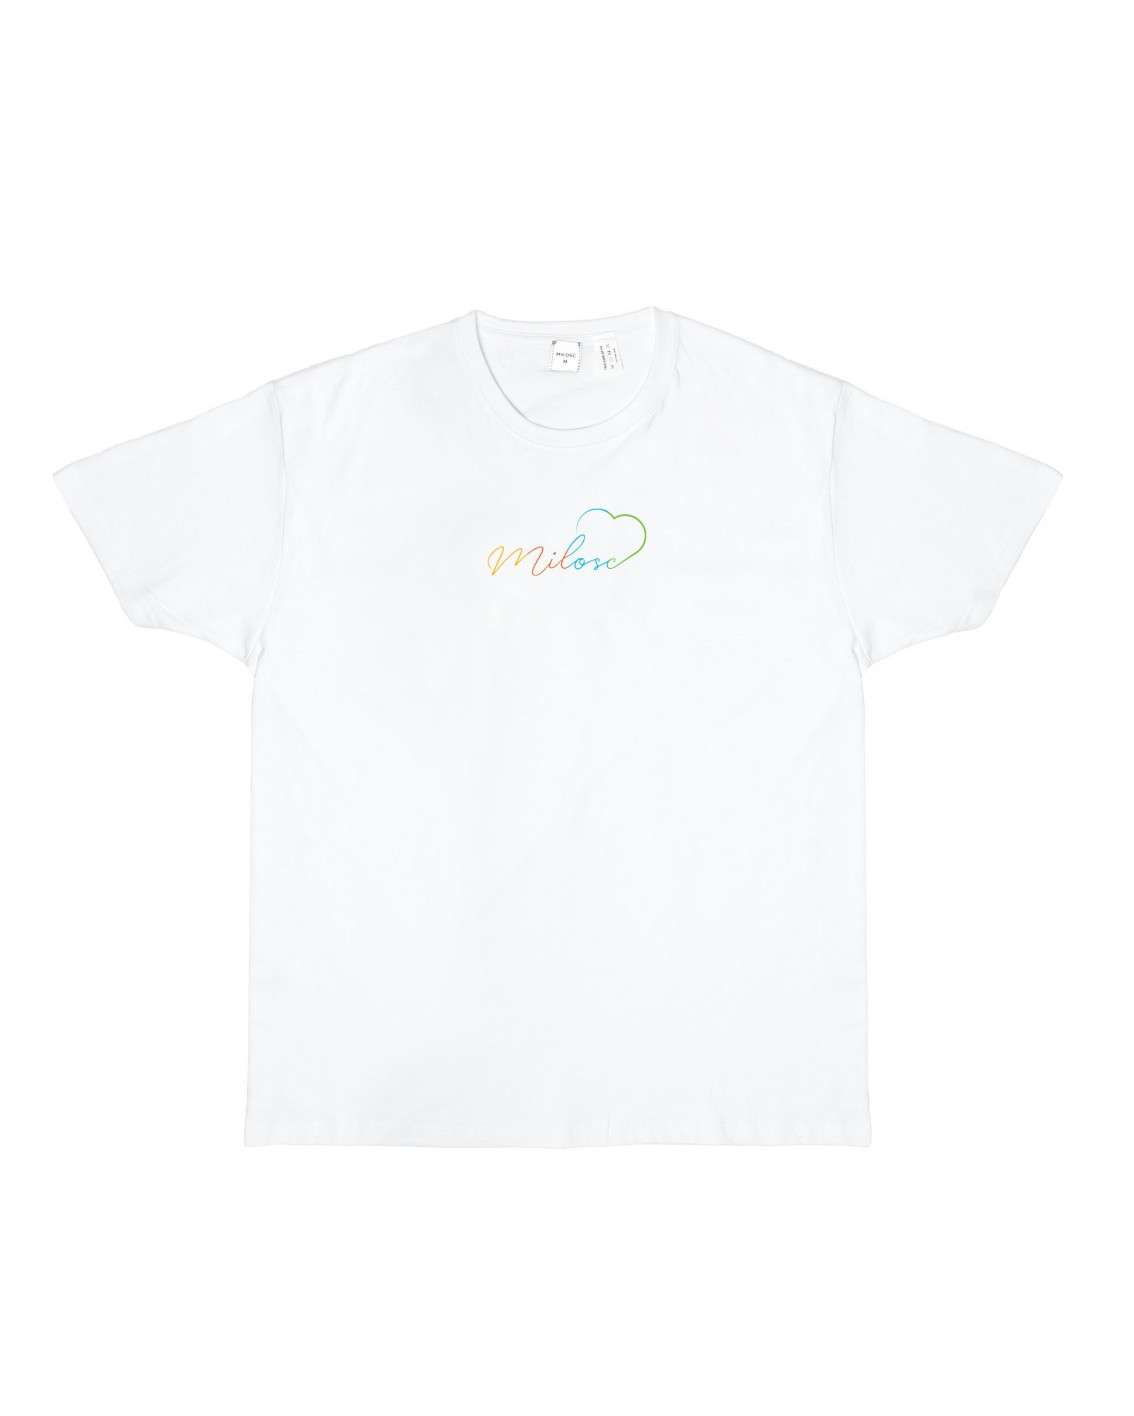 Nowość! t-shirt biały z nowym logo tęczowym